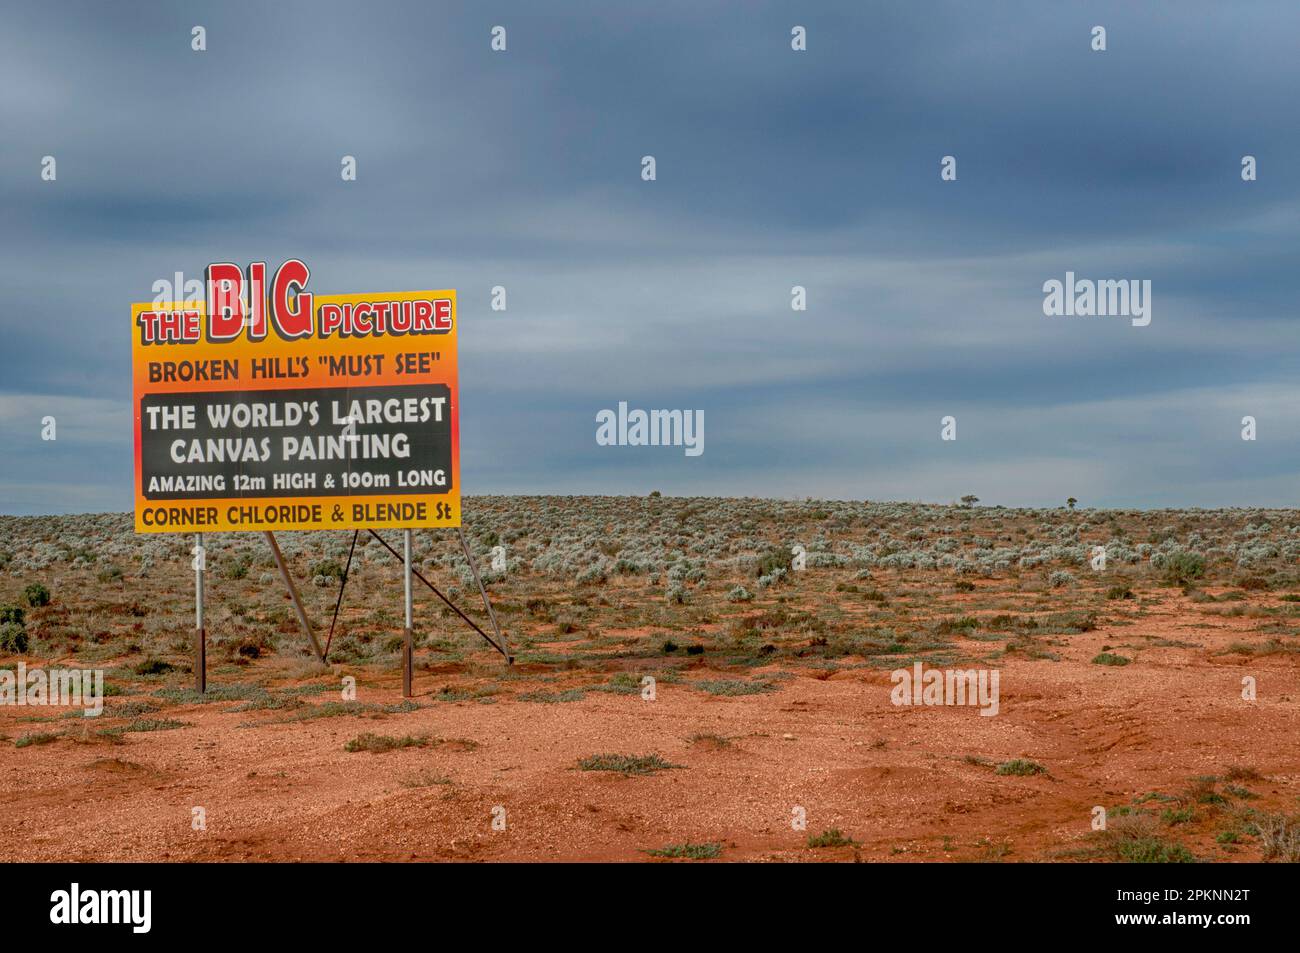 Affiche annonçant la plus grande peinture en toile du monde, 12 mètres sur 100 mètres, dans le paysage aride du désert à l'extérieur de Broken Hill, Nouvelle-Galles du Sud Banque D'Images